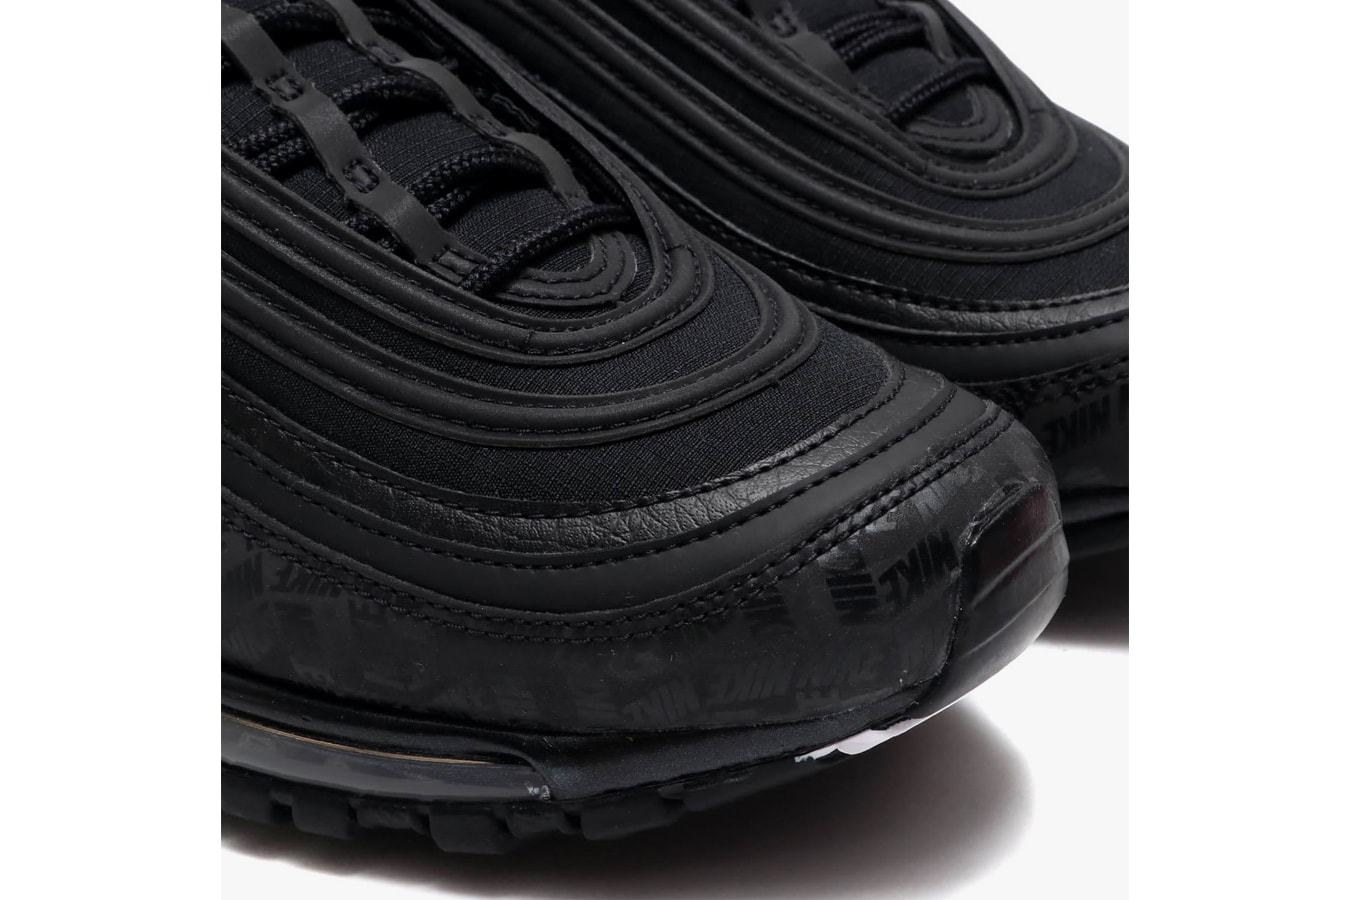 Nike Air Max 97 black university red release info sneakers footwear branding